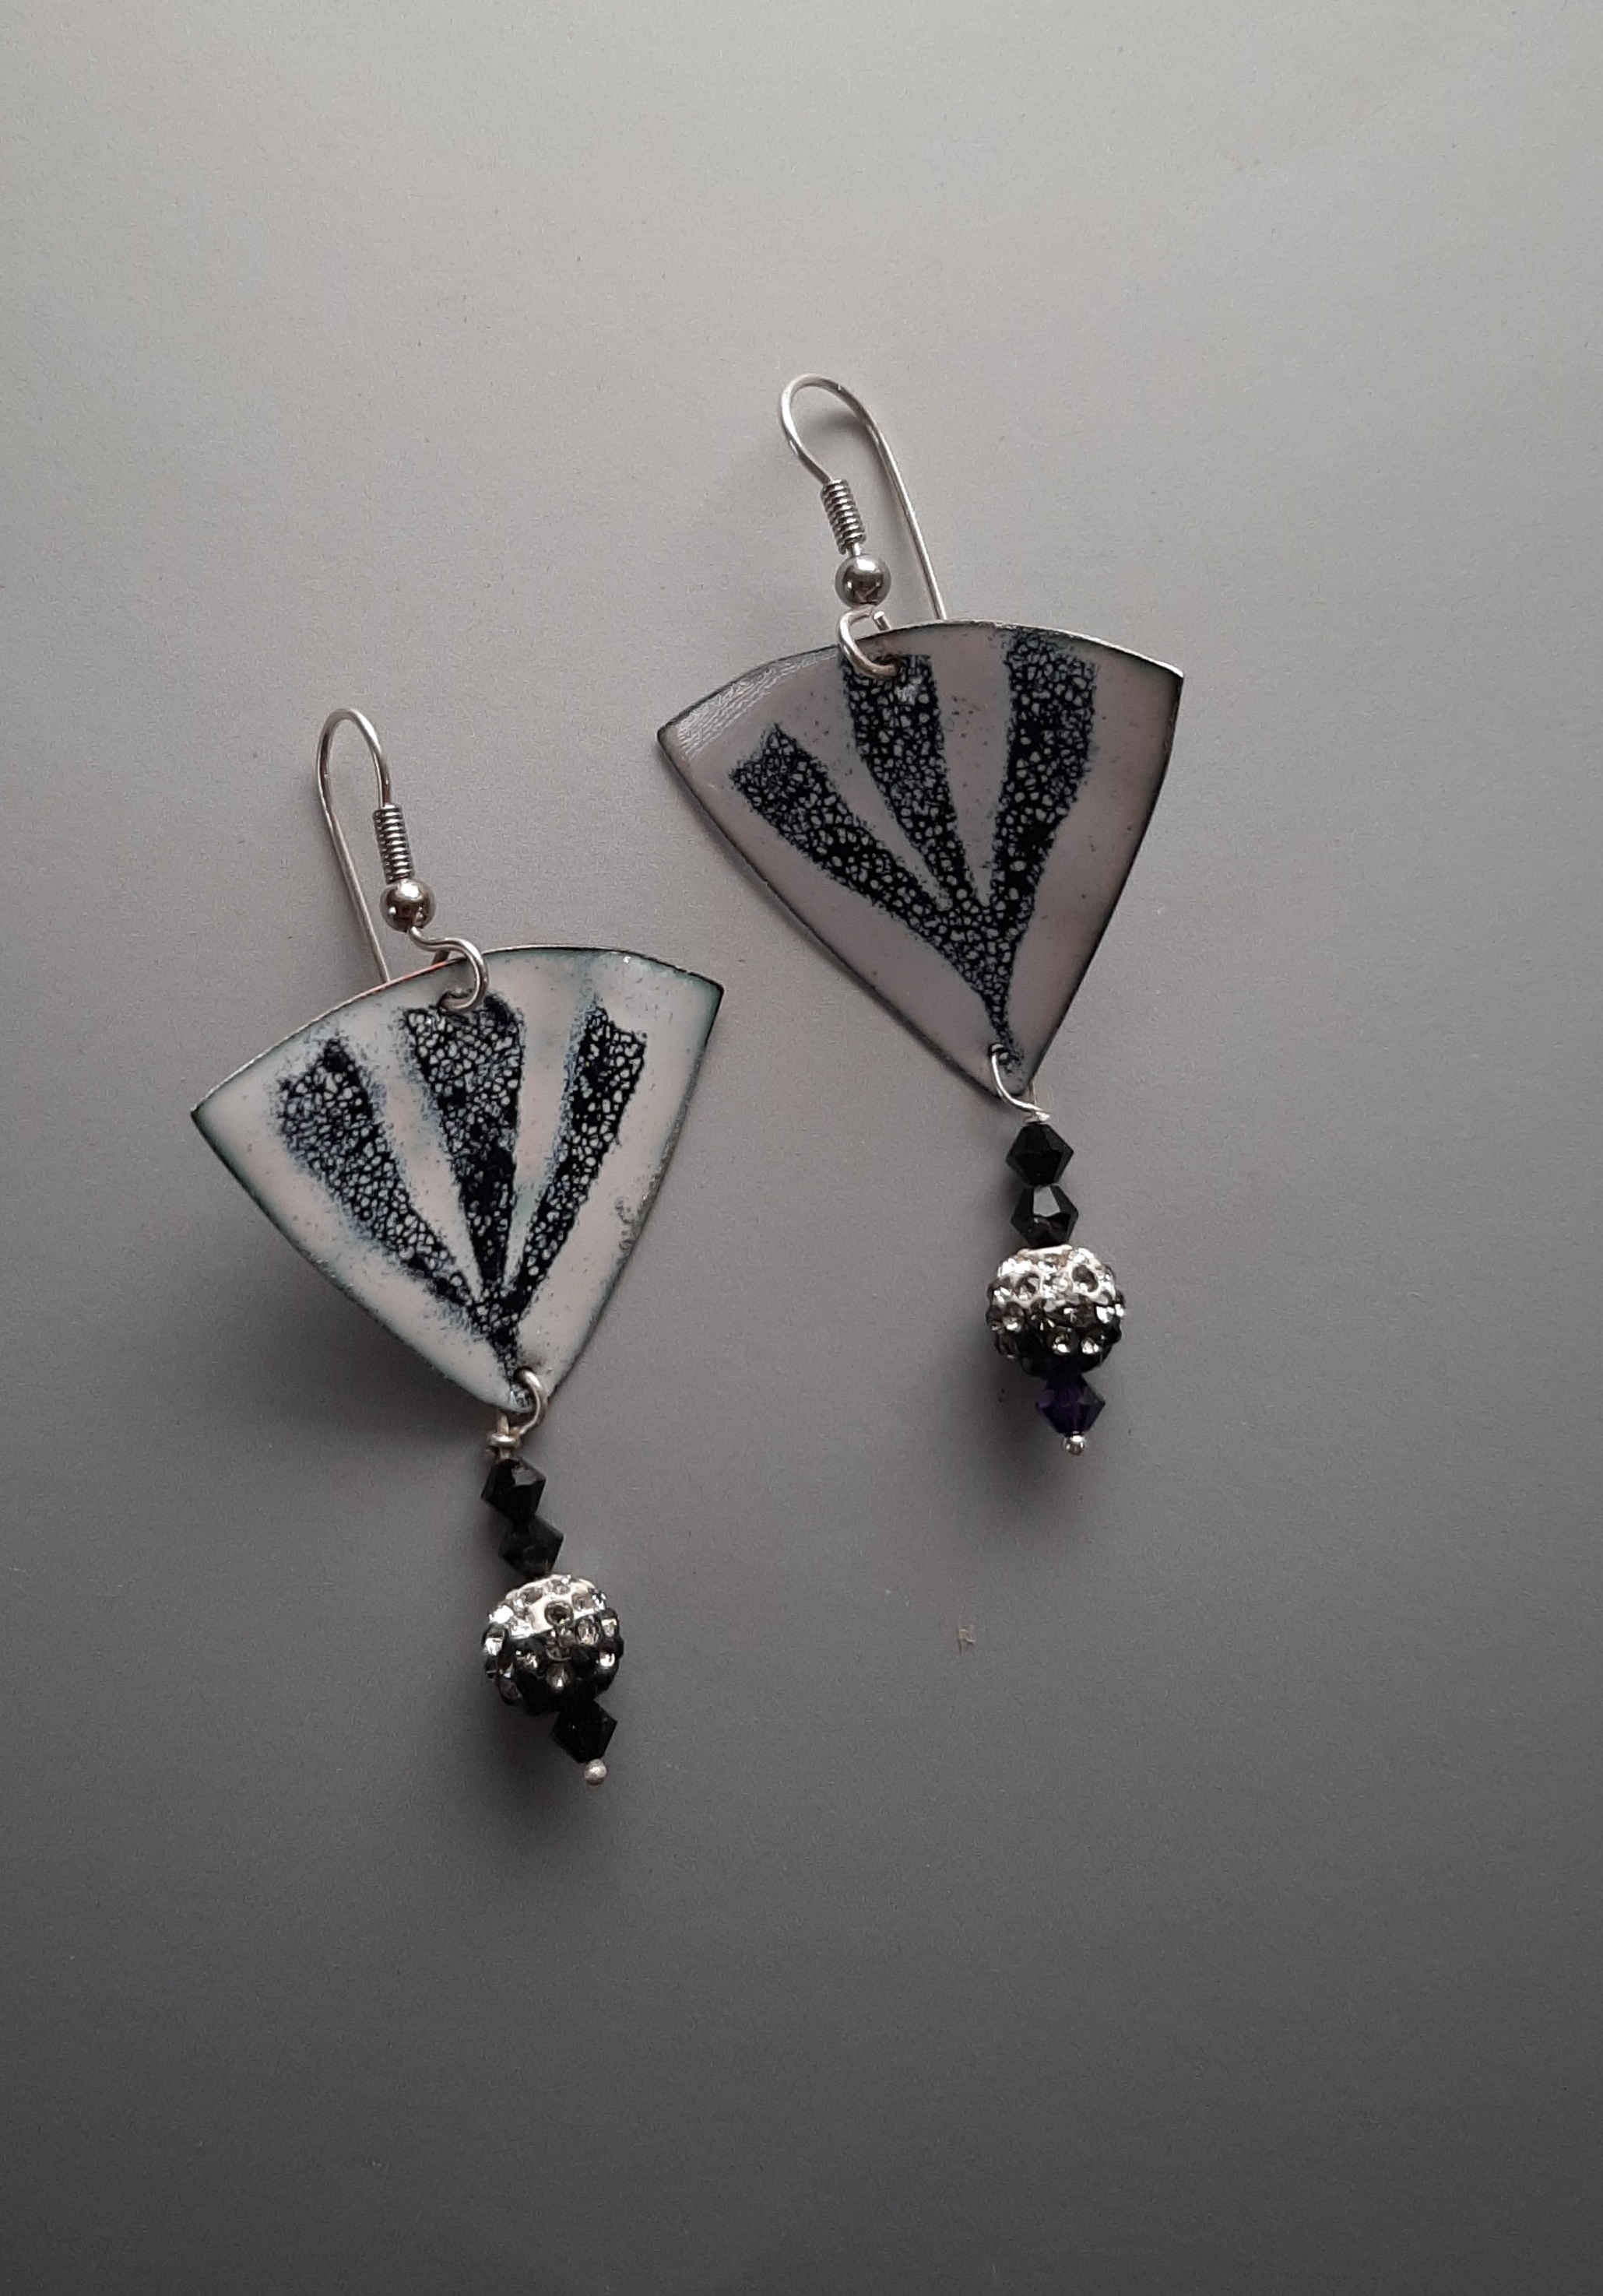 Triangular Black & White Earrings on Silver Hooks